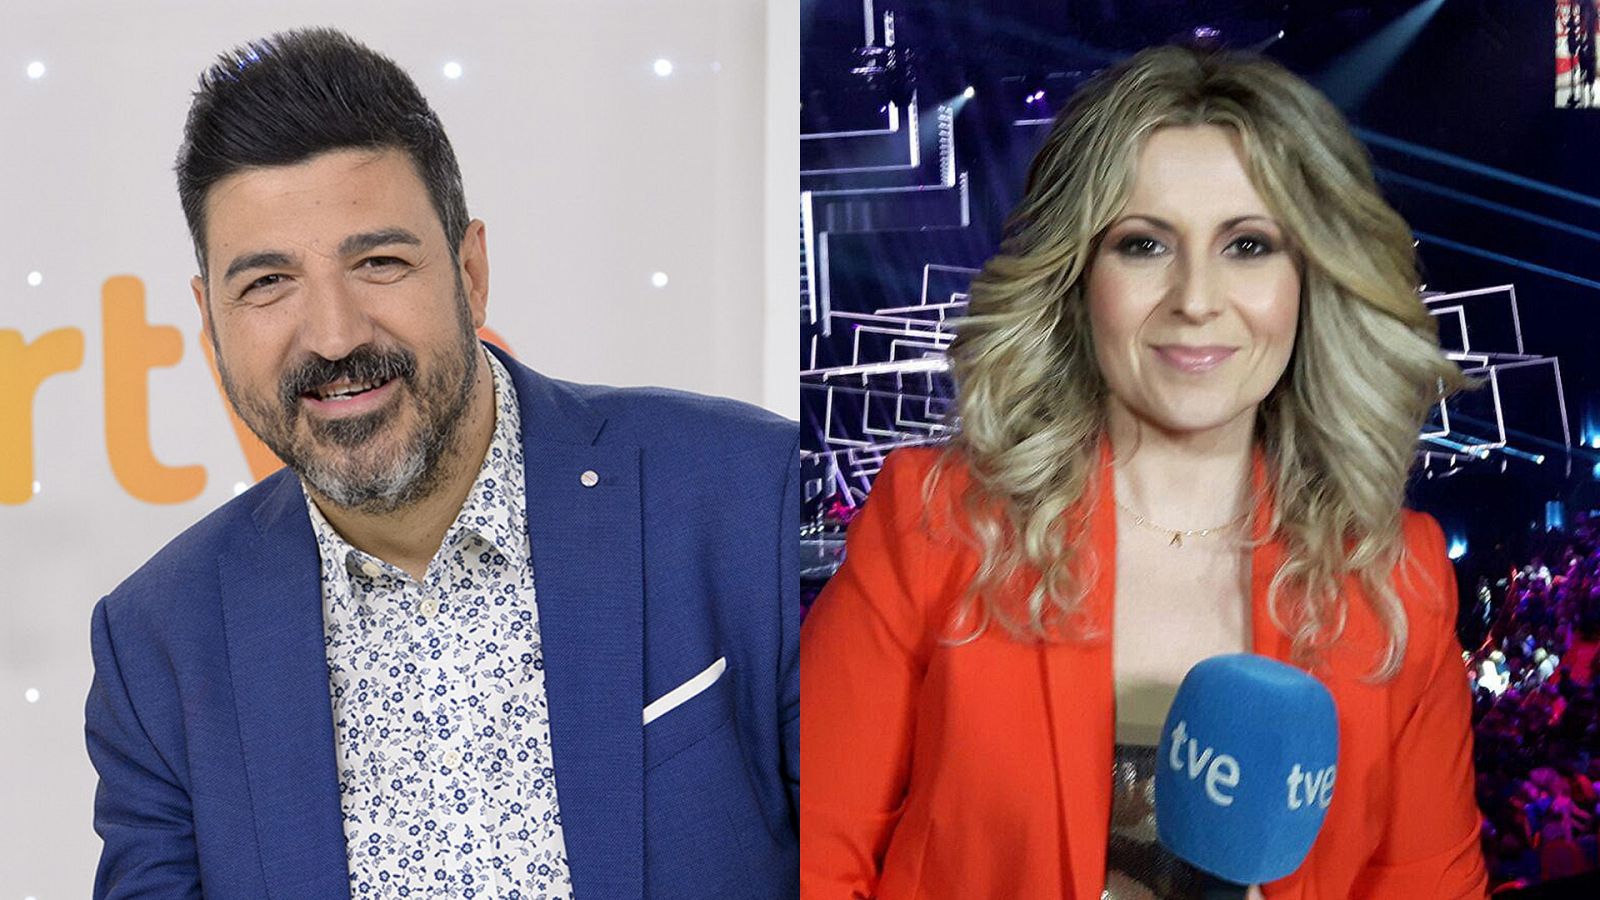  Tony Aguilar y Eva Mora comentaristas de 'Eurovisión Junior 2020'